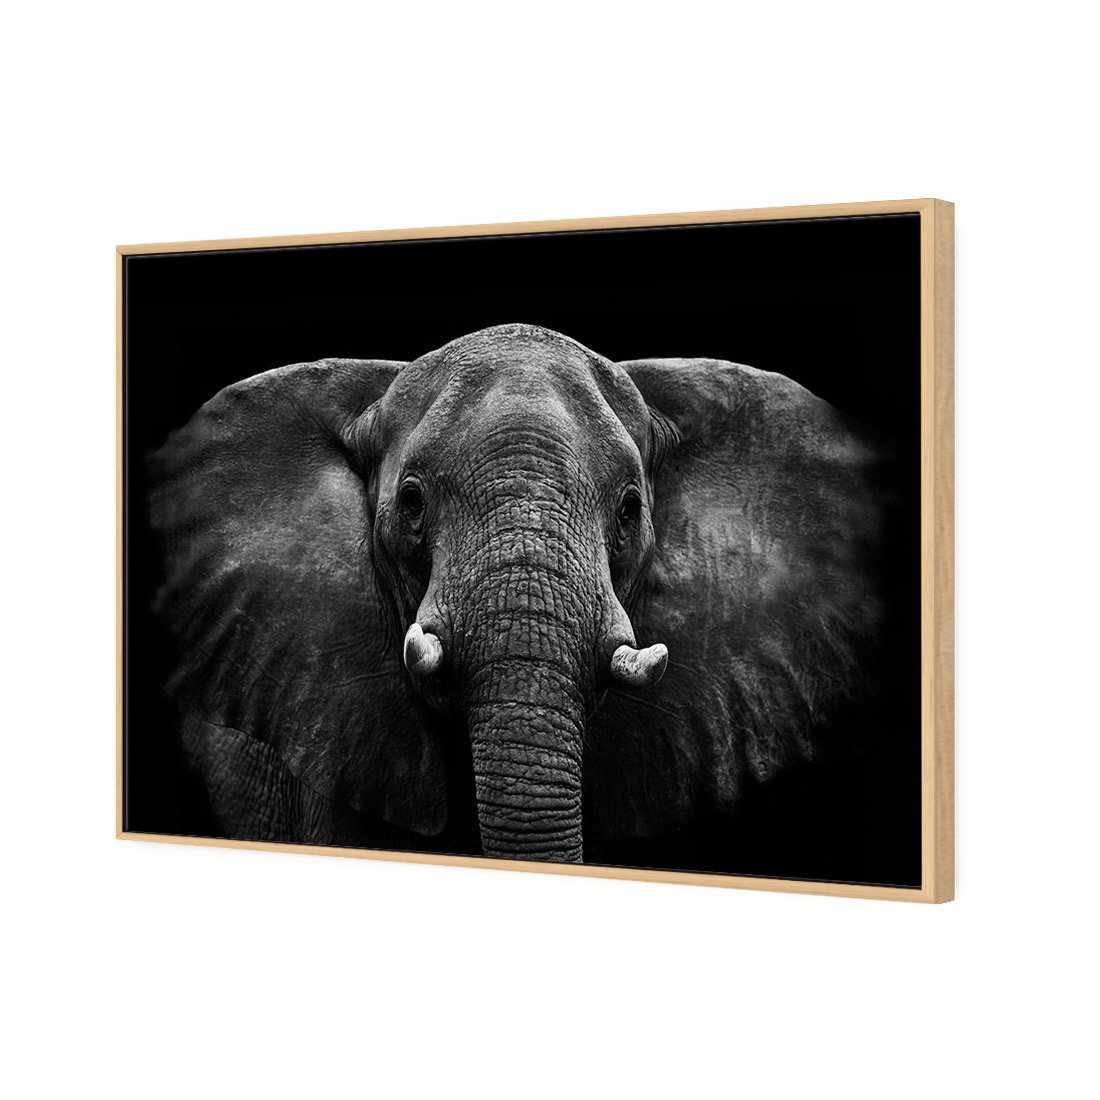 Regal Elephant Canvas Art-Canvas-Wall Art Designs-45x30cm-Canvas - Oak Frame-Wall Art Designs